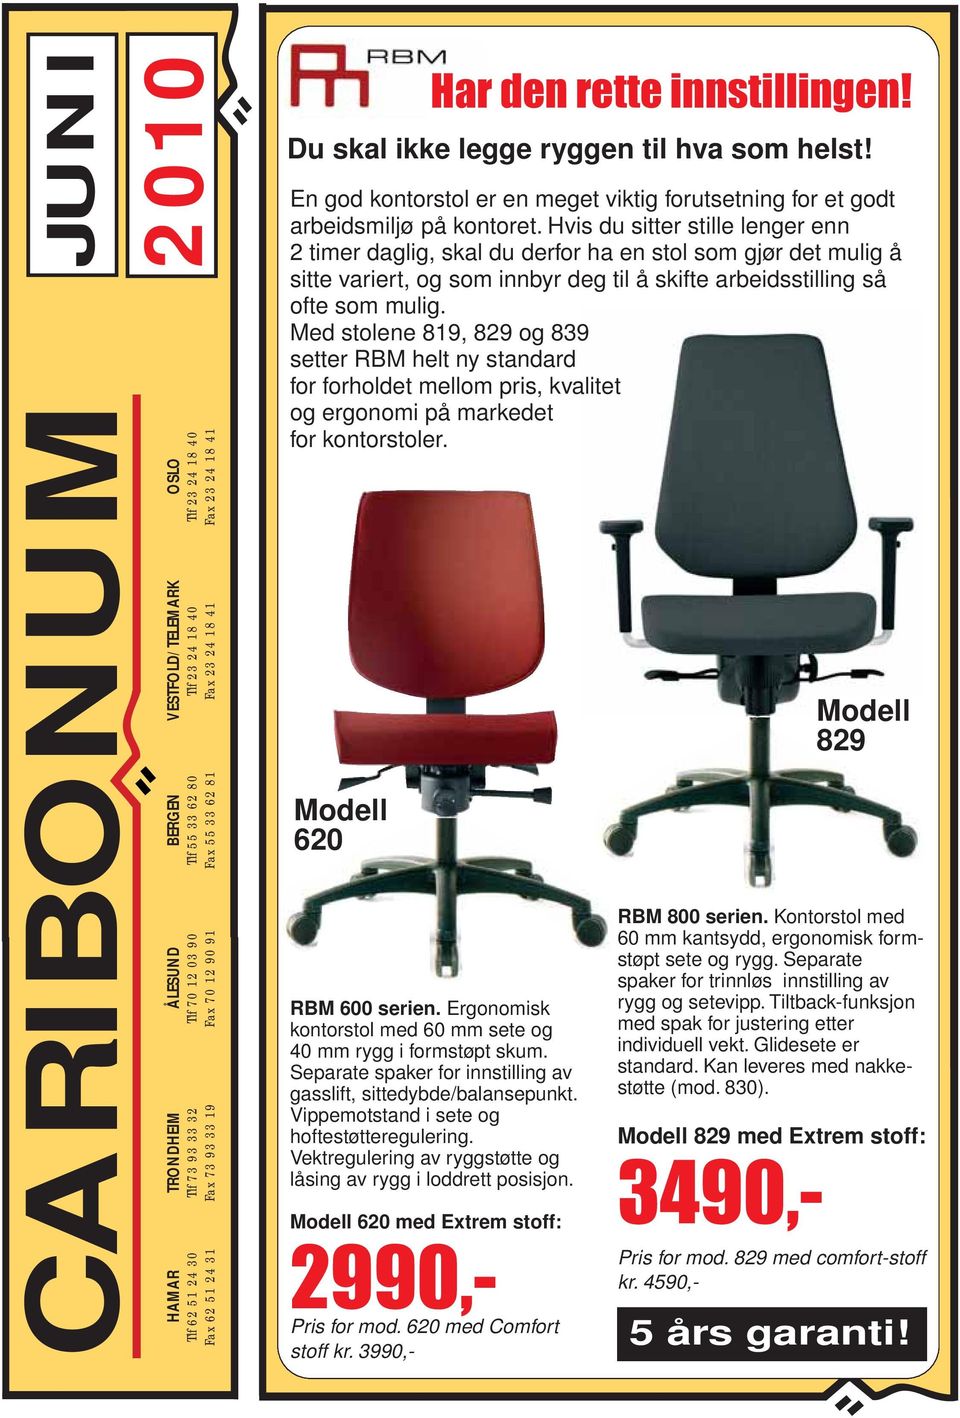 Med stolene 819, 829 og 839 setter RBM helt ny standard for forholdet mellom pris, kvalitet og ergonomi på markedet for kontorstoler. Modell 620 RBM 600 serien.